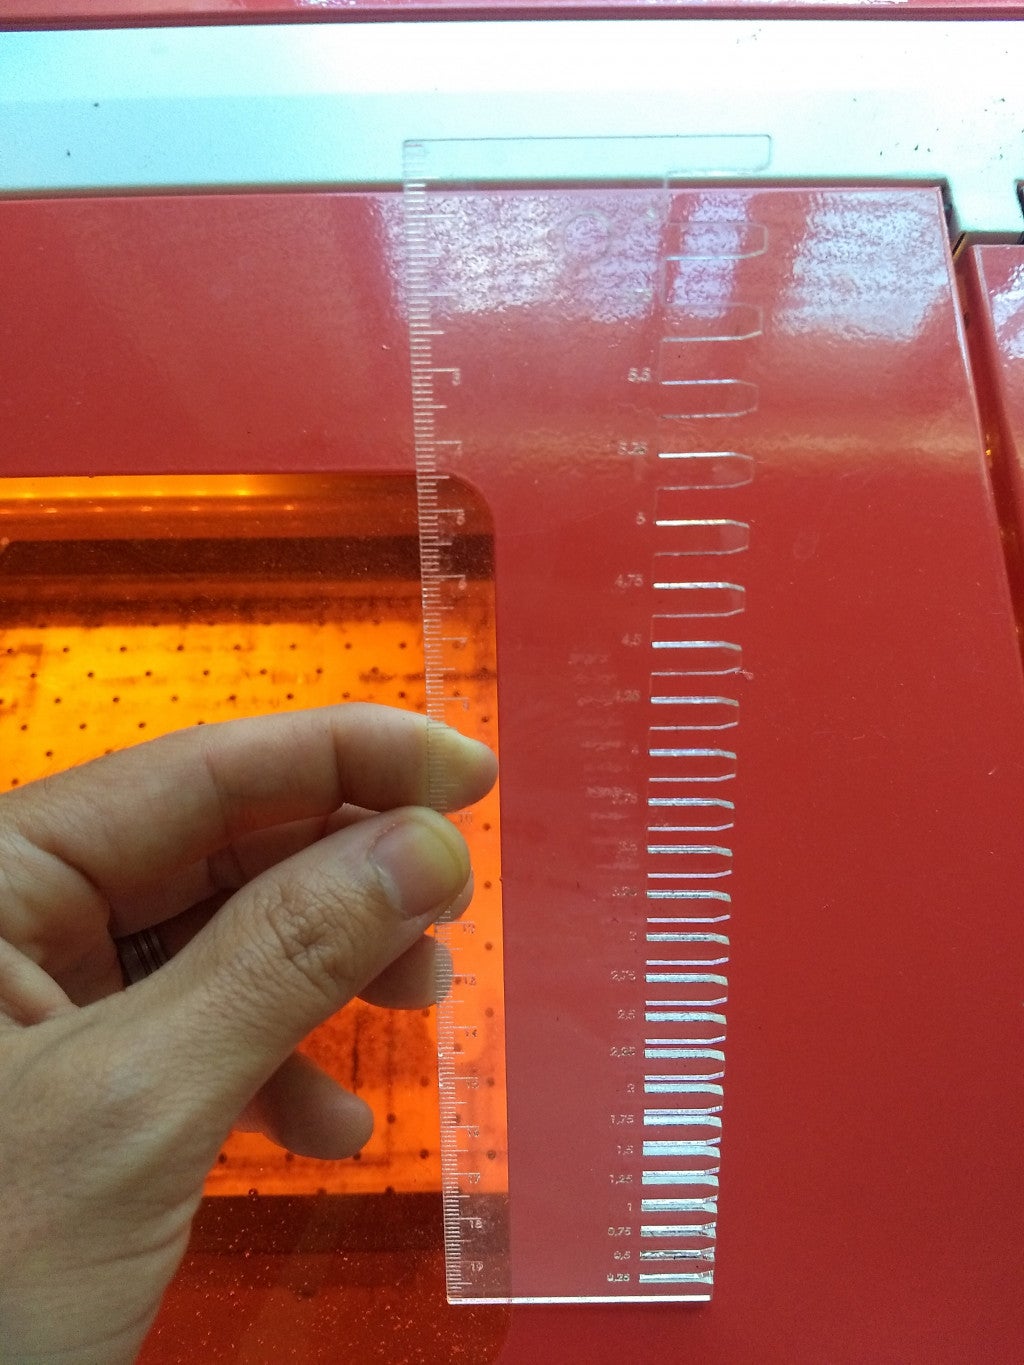 Righello tagliato al laser per misurare le dimensioni e lo spessore del calibro in millimetri